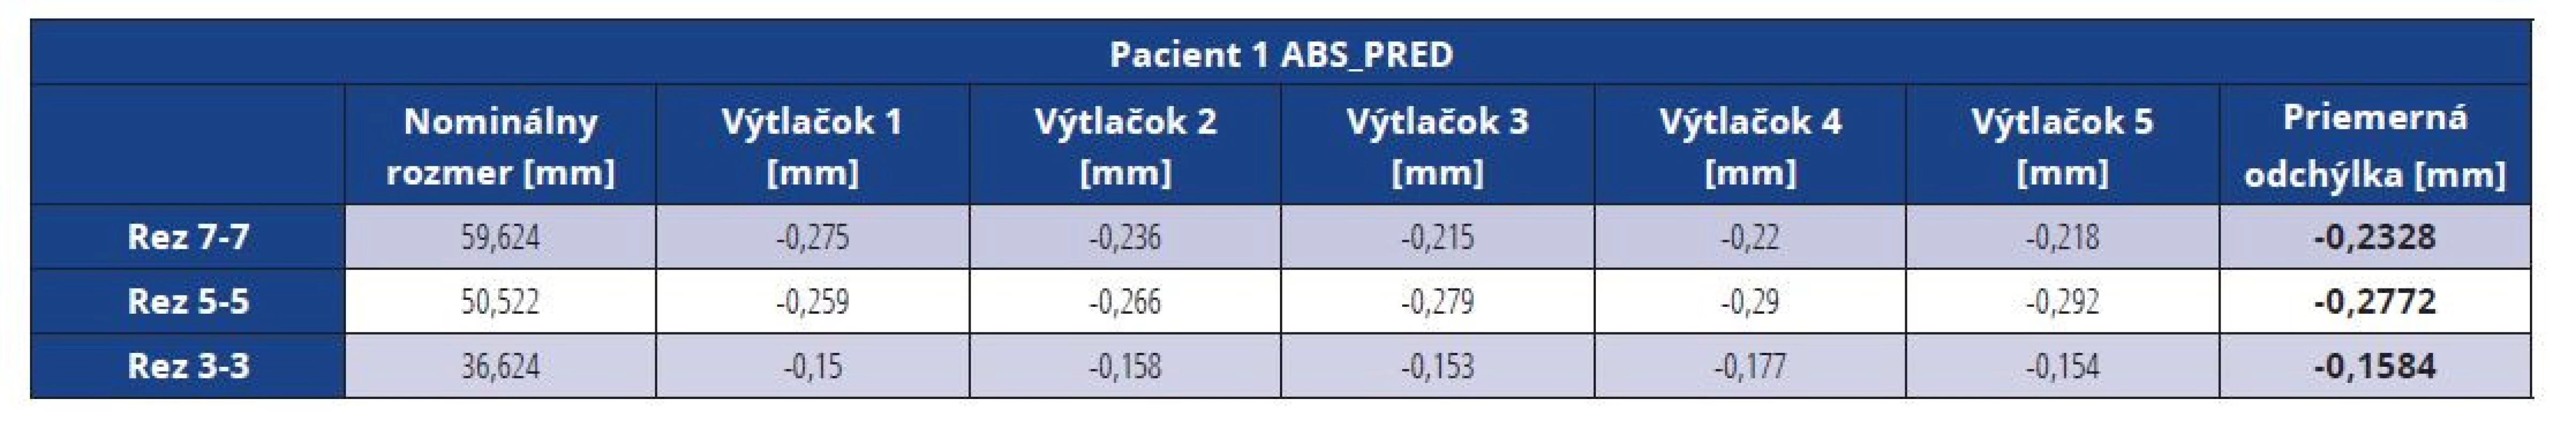 Rozmerové odchýlky master modelu pacienta 1 vytlačeného z materiálu ABS pred vákuovaním<br>
Tab. 1 Dimensional deviations of the ABS master model before vacuuming (patient 1)